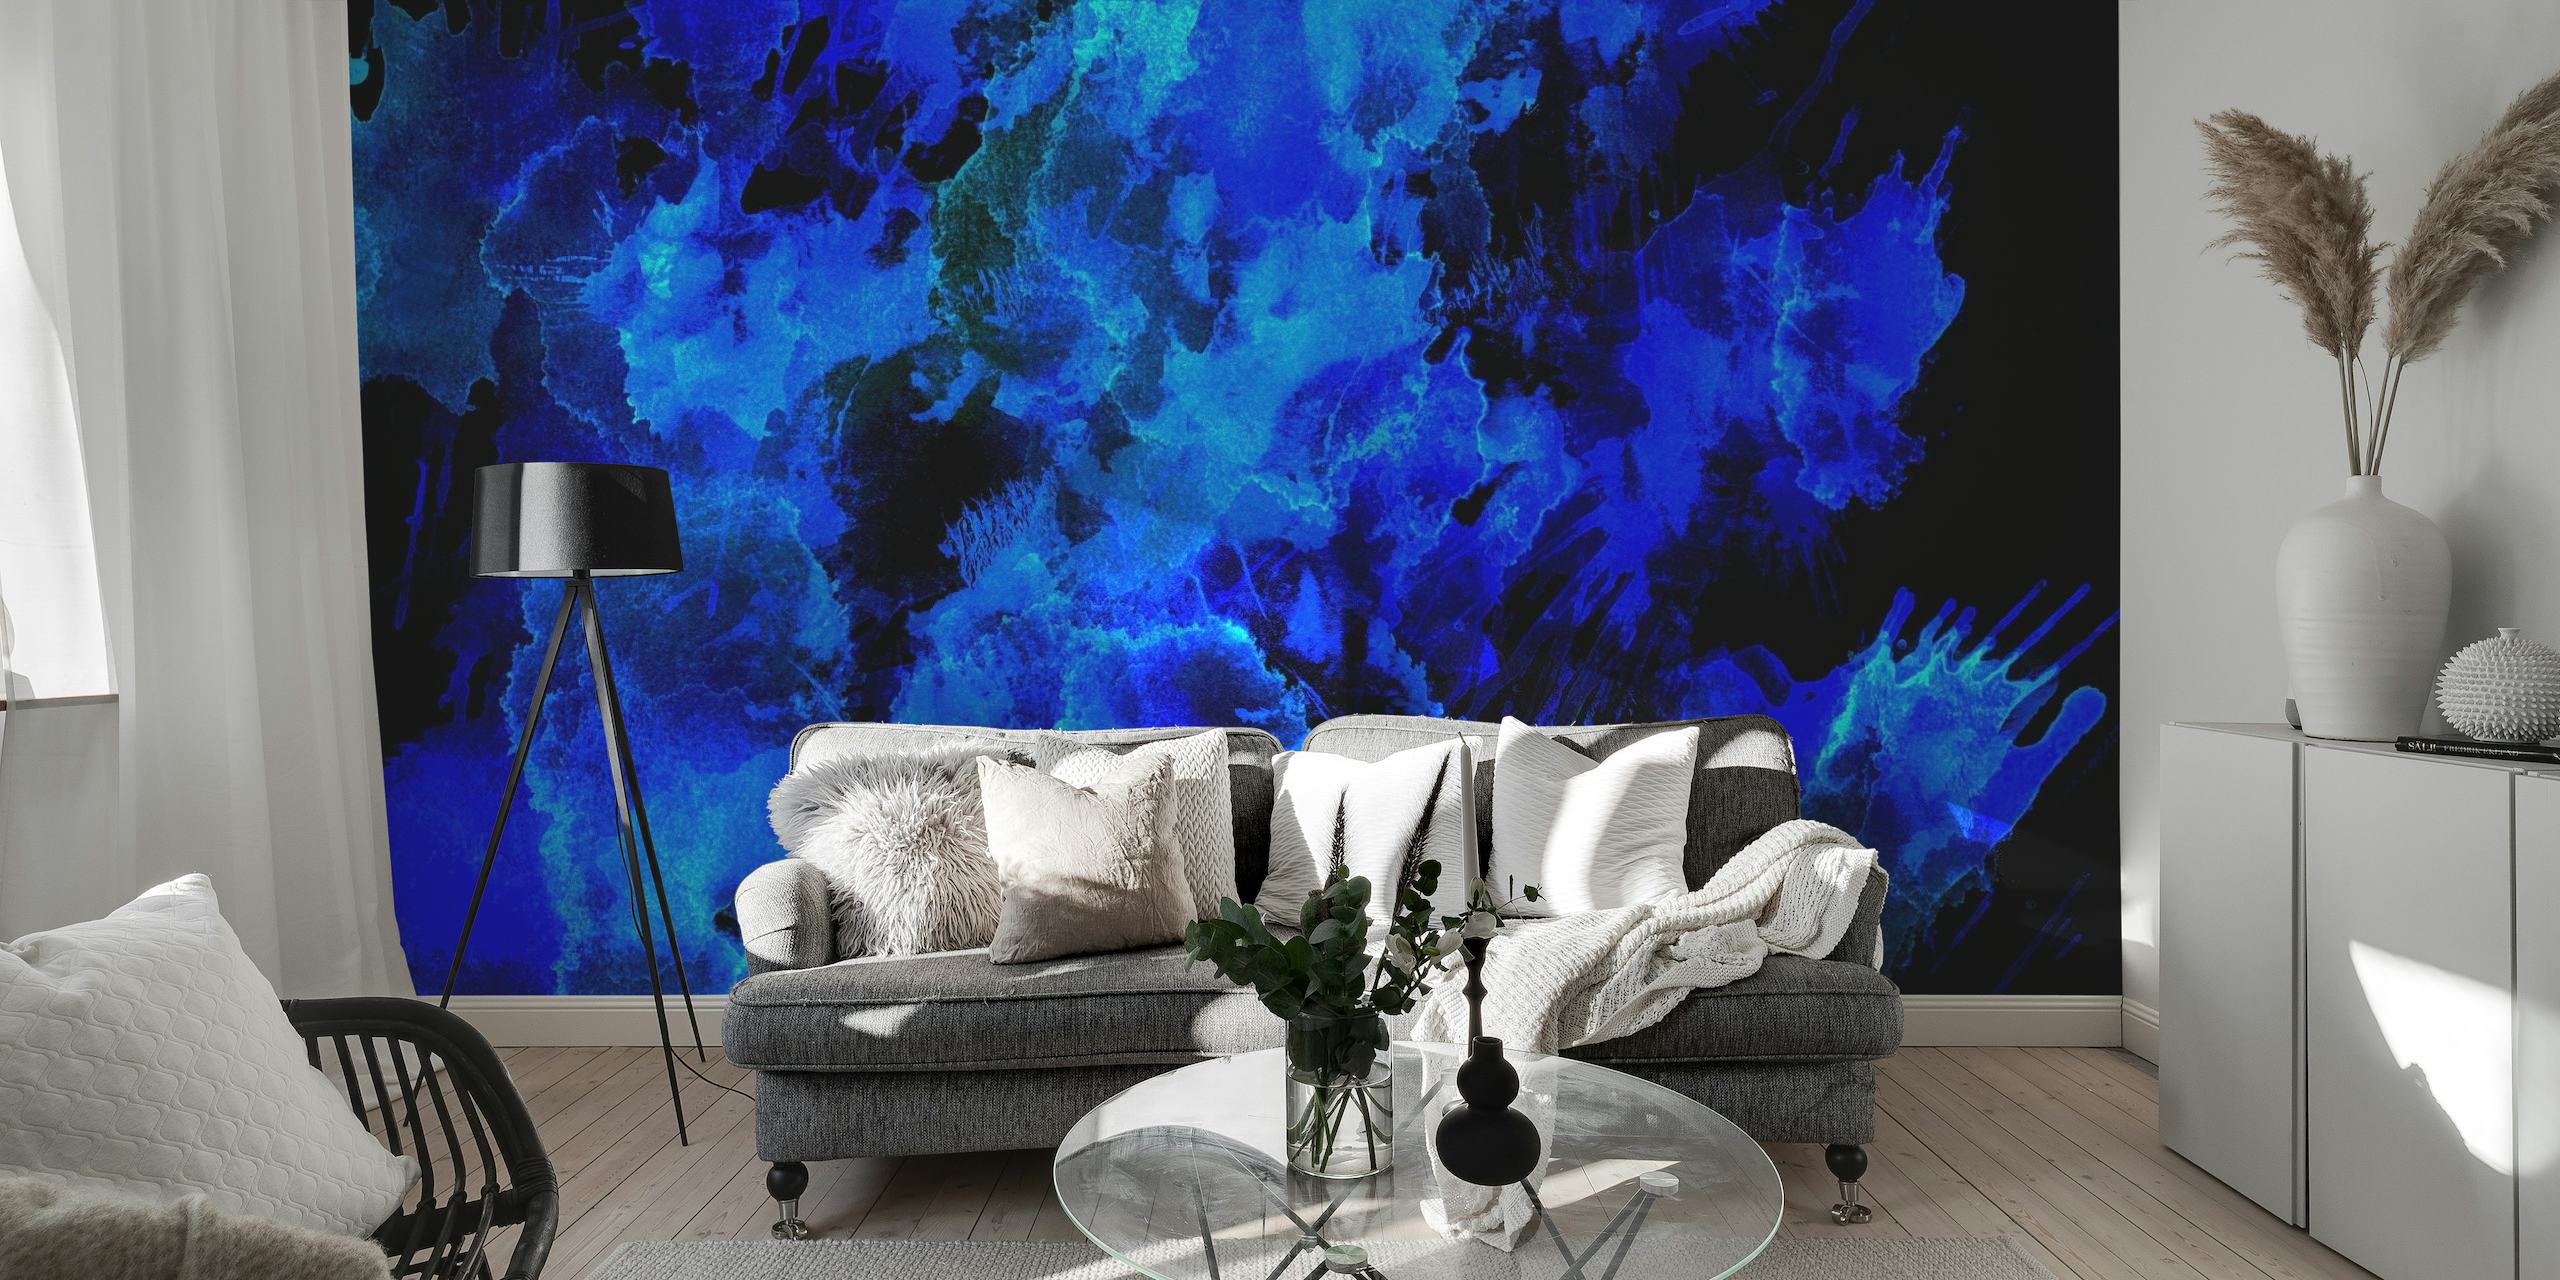 Murale astratto con sfumature blu che evoca la bellezza del cielo notturno o delle profondità oceaniche